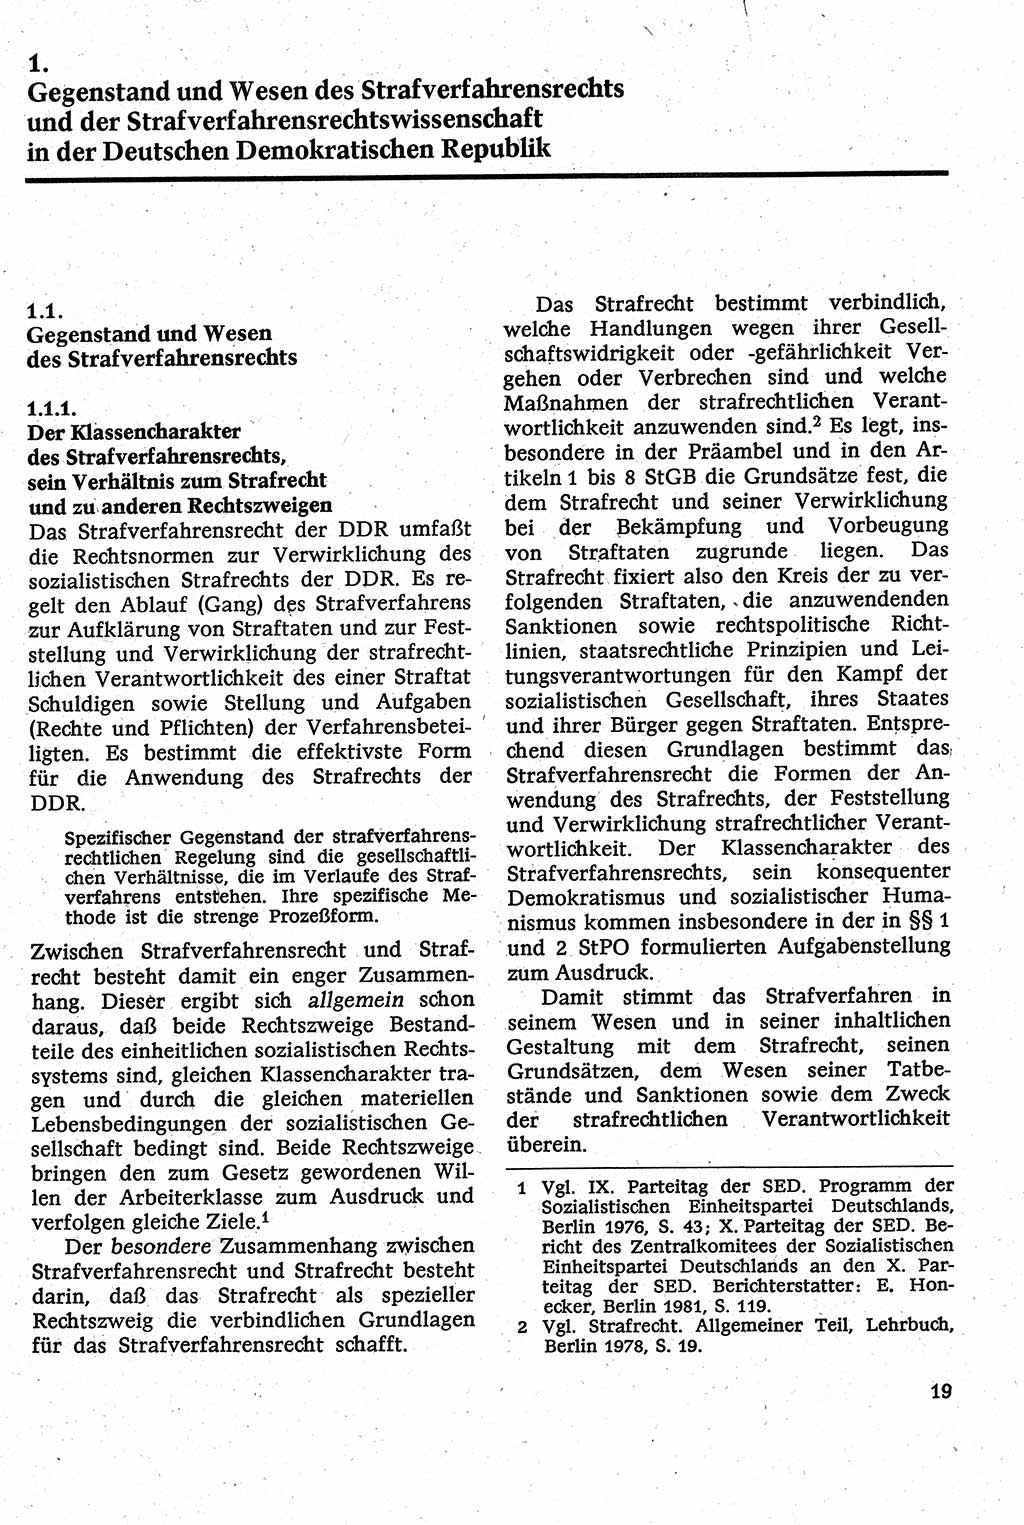 Strafverfahrensrecht [Deutsche Demokratische Republik (DDR)], Lehrbuch 1982, Seite 19 (Strafverf.-R. DDR Lb. 1982, S. 19)